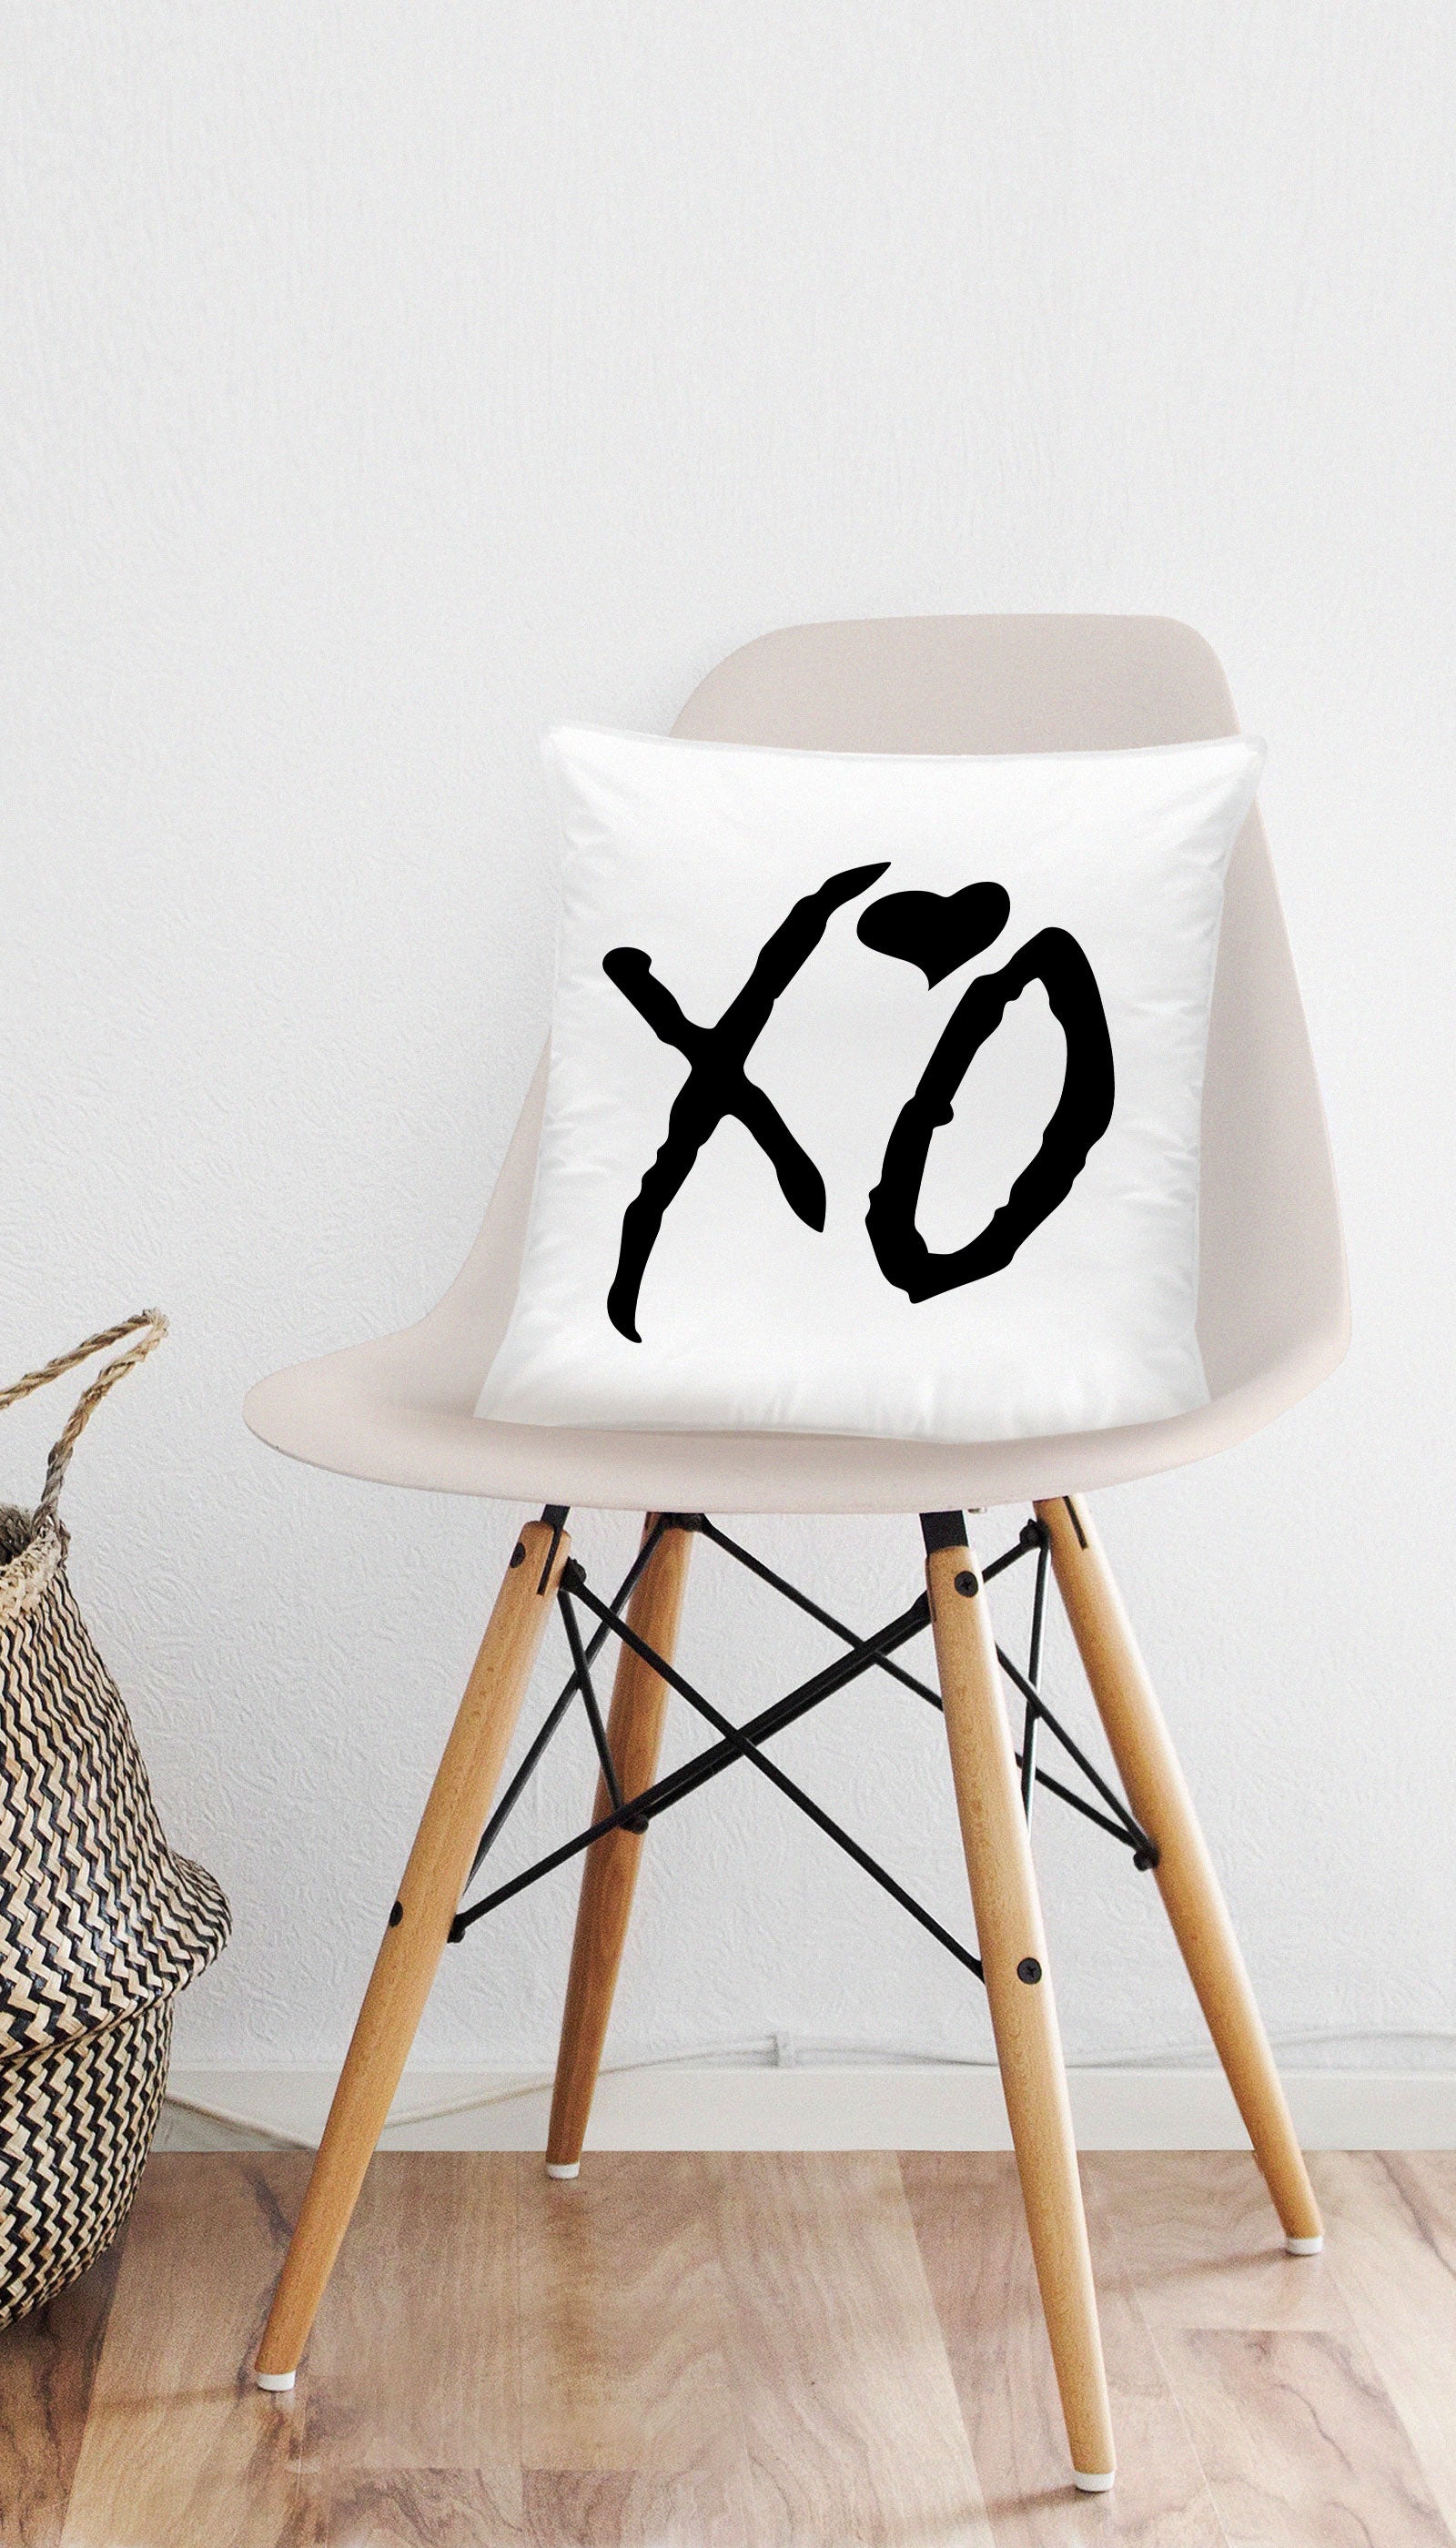 XO Shaped Pillow